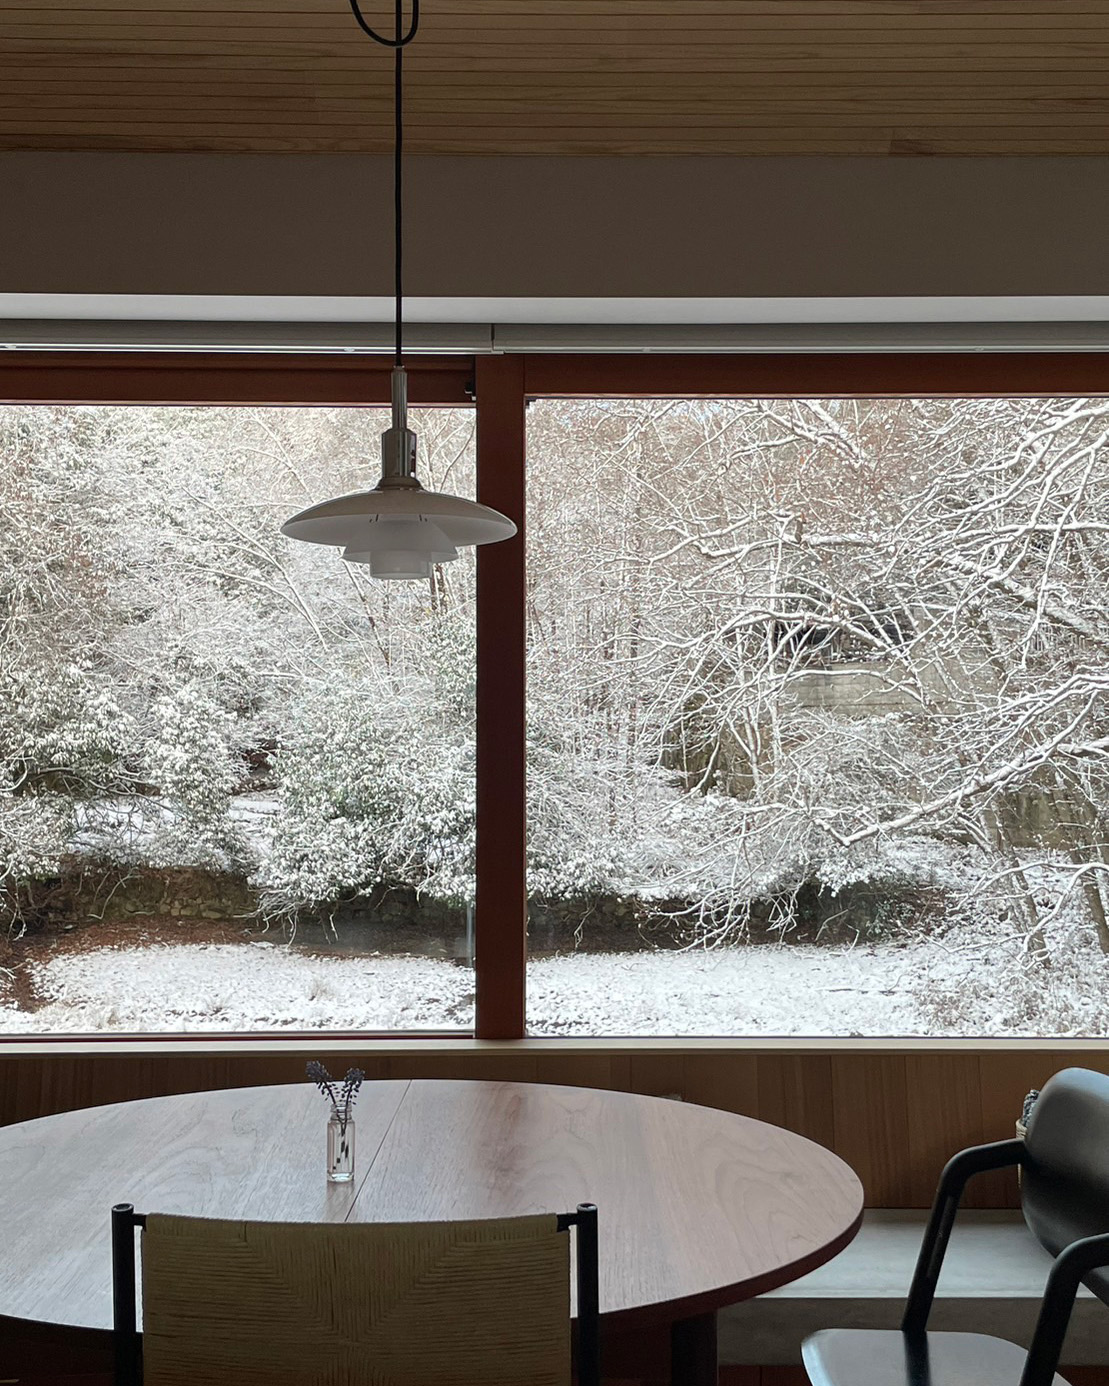 上高野の家から素敵な雪景色が届きました